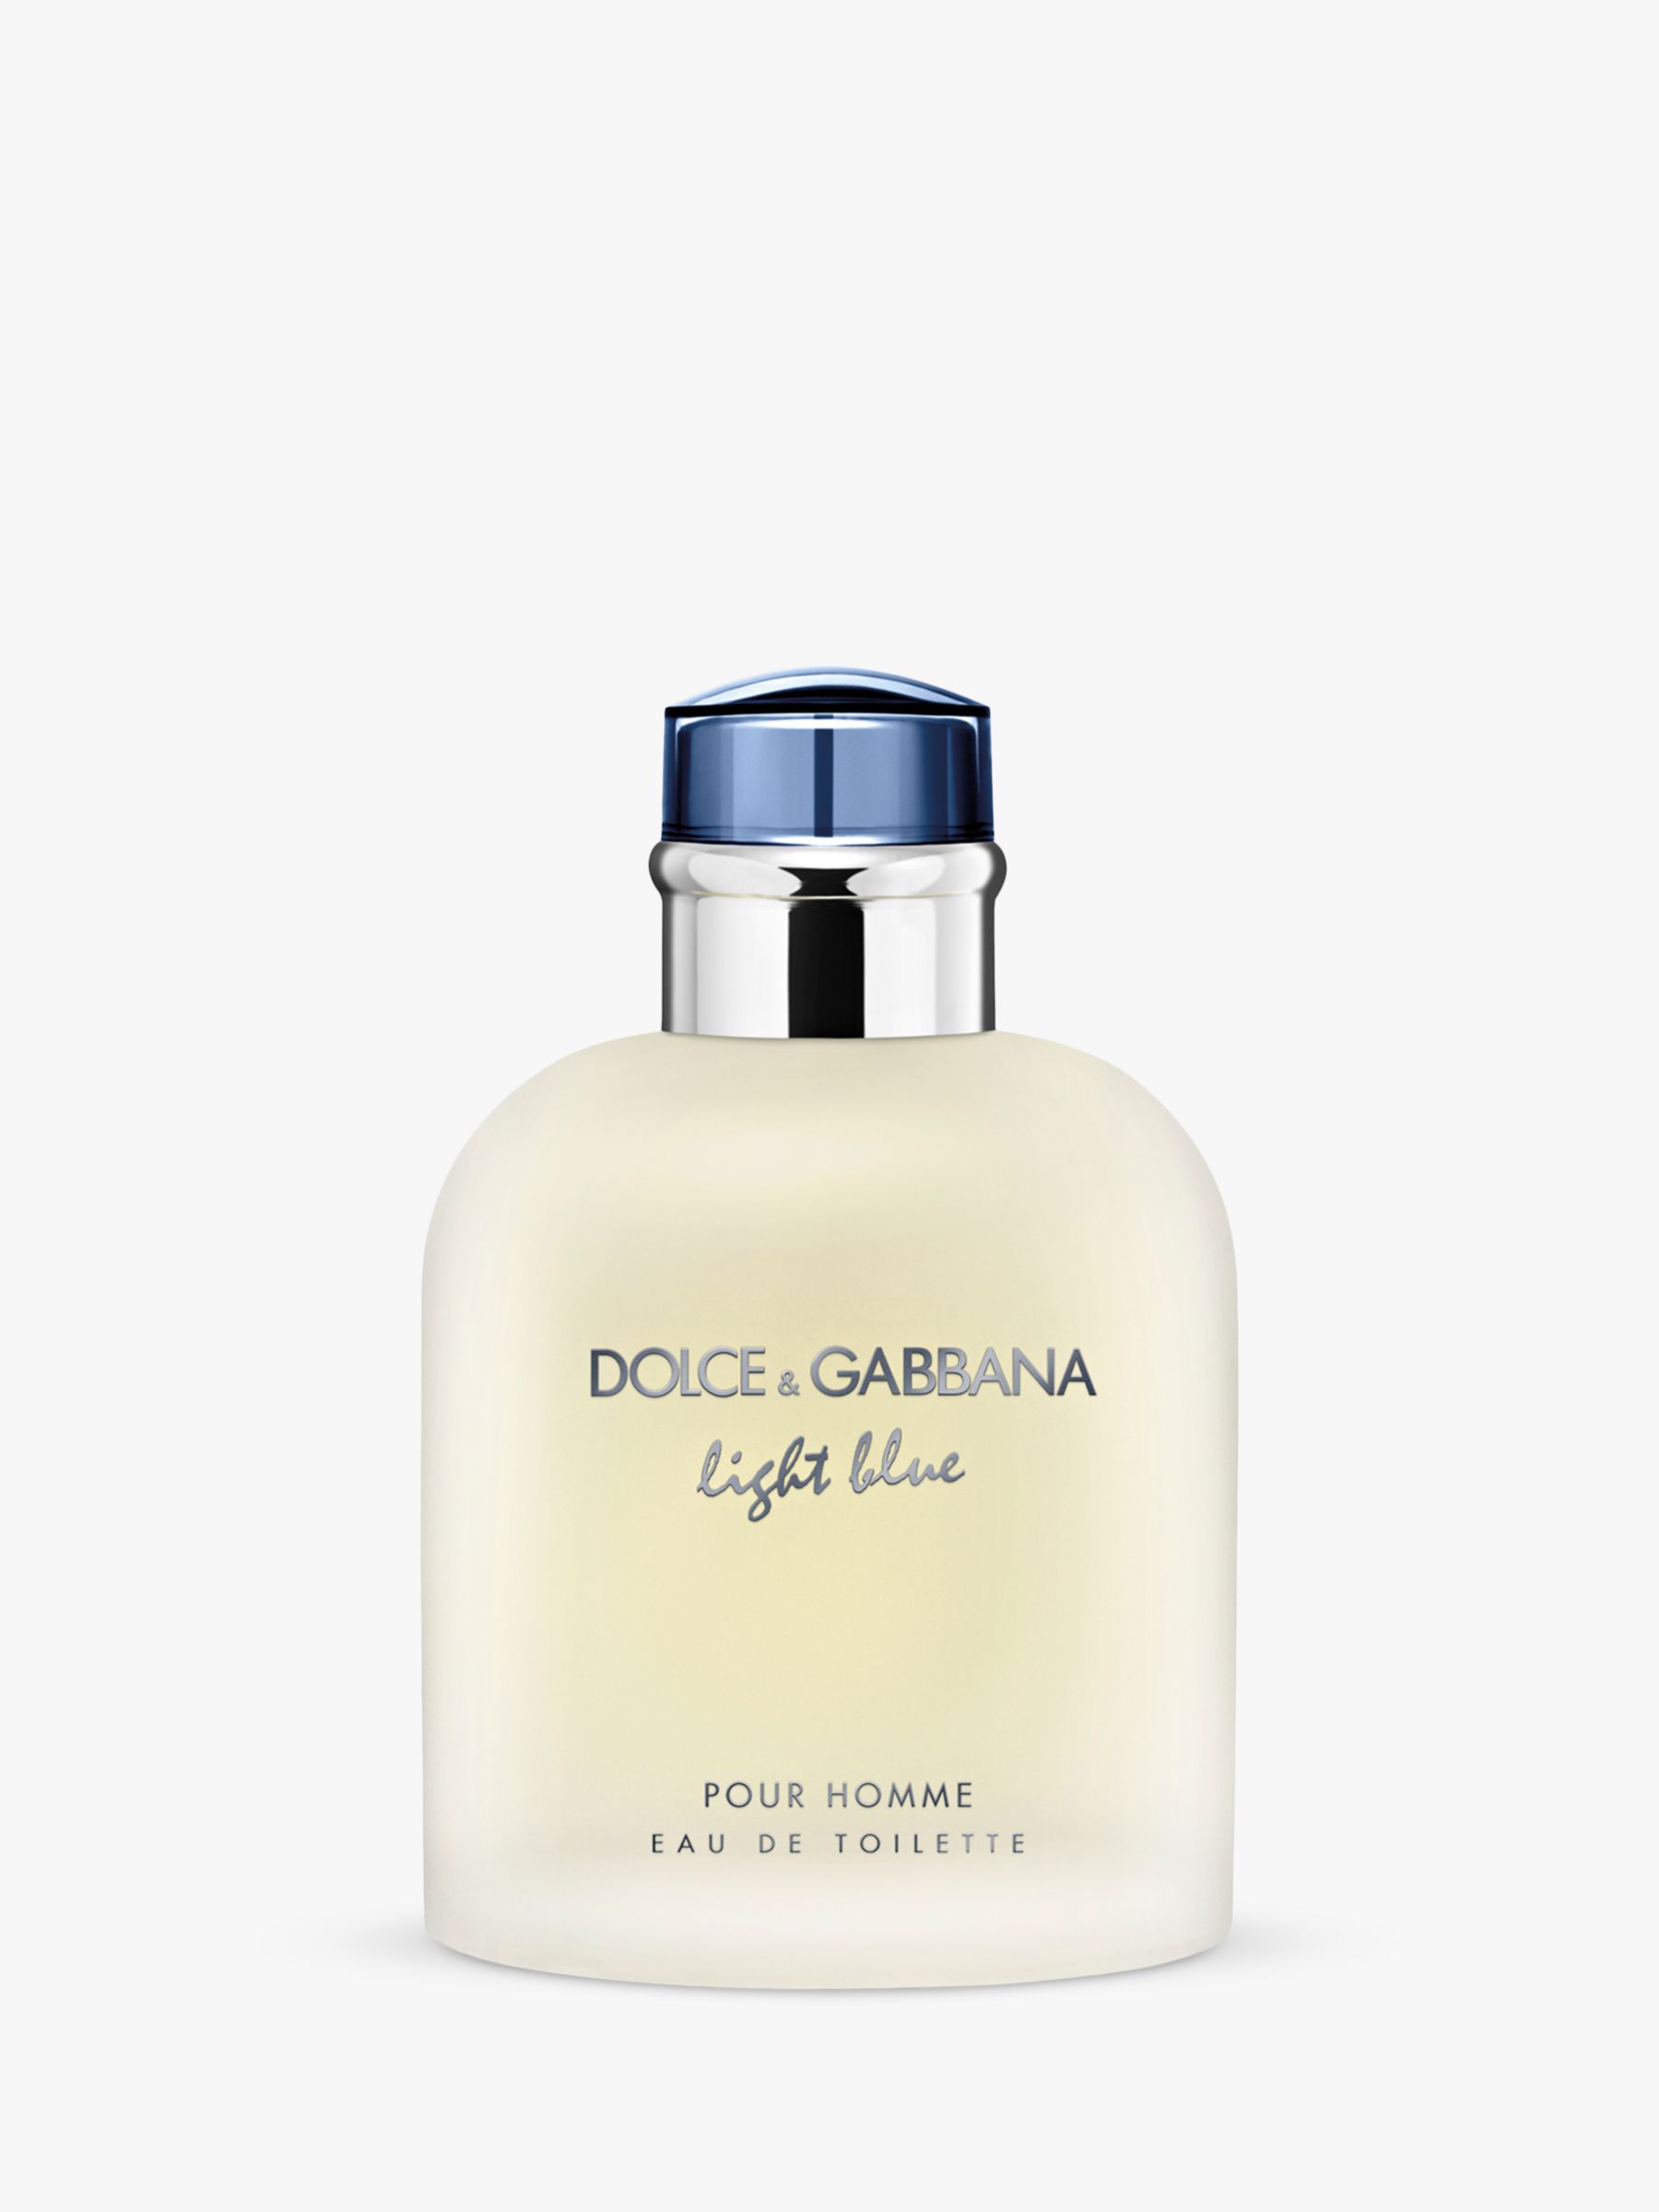 Dolce & Gabbana Light Blue Pour Homme Eau de Toilette, 125ml at John ...